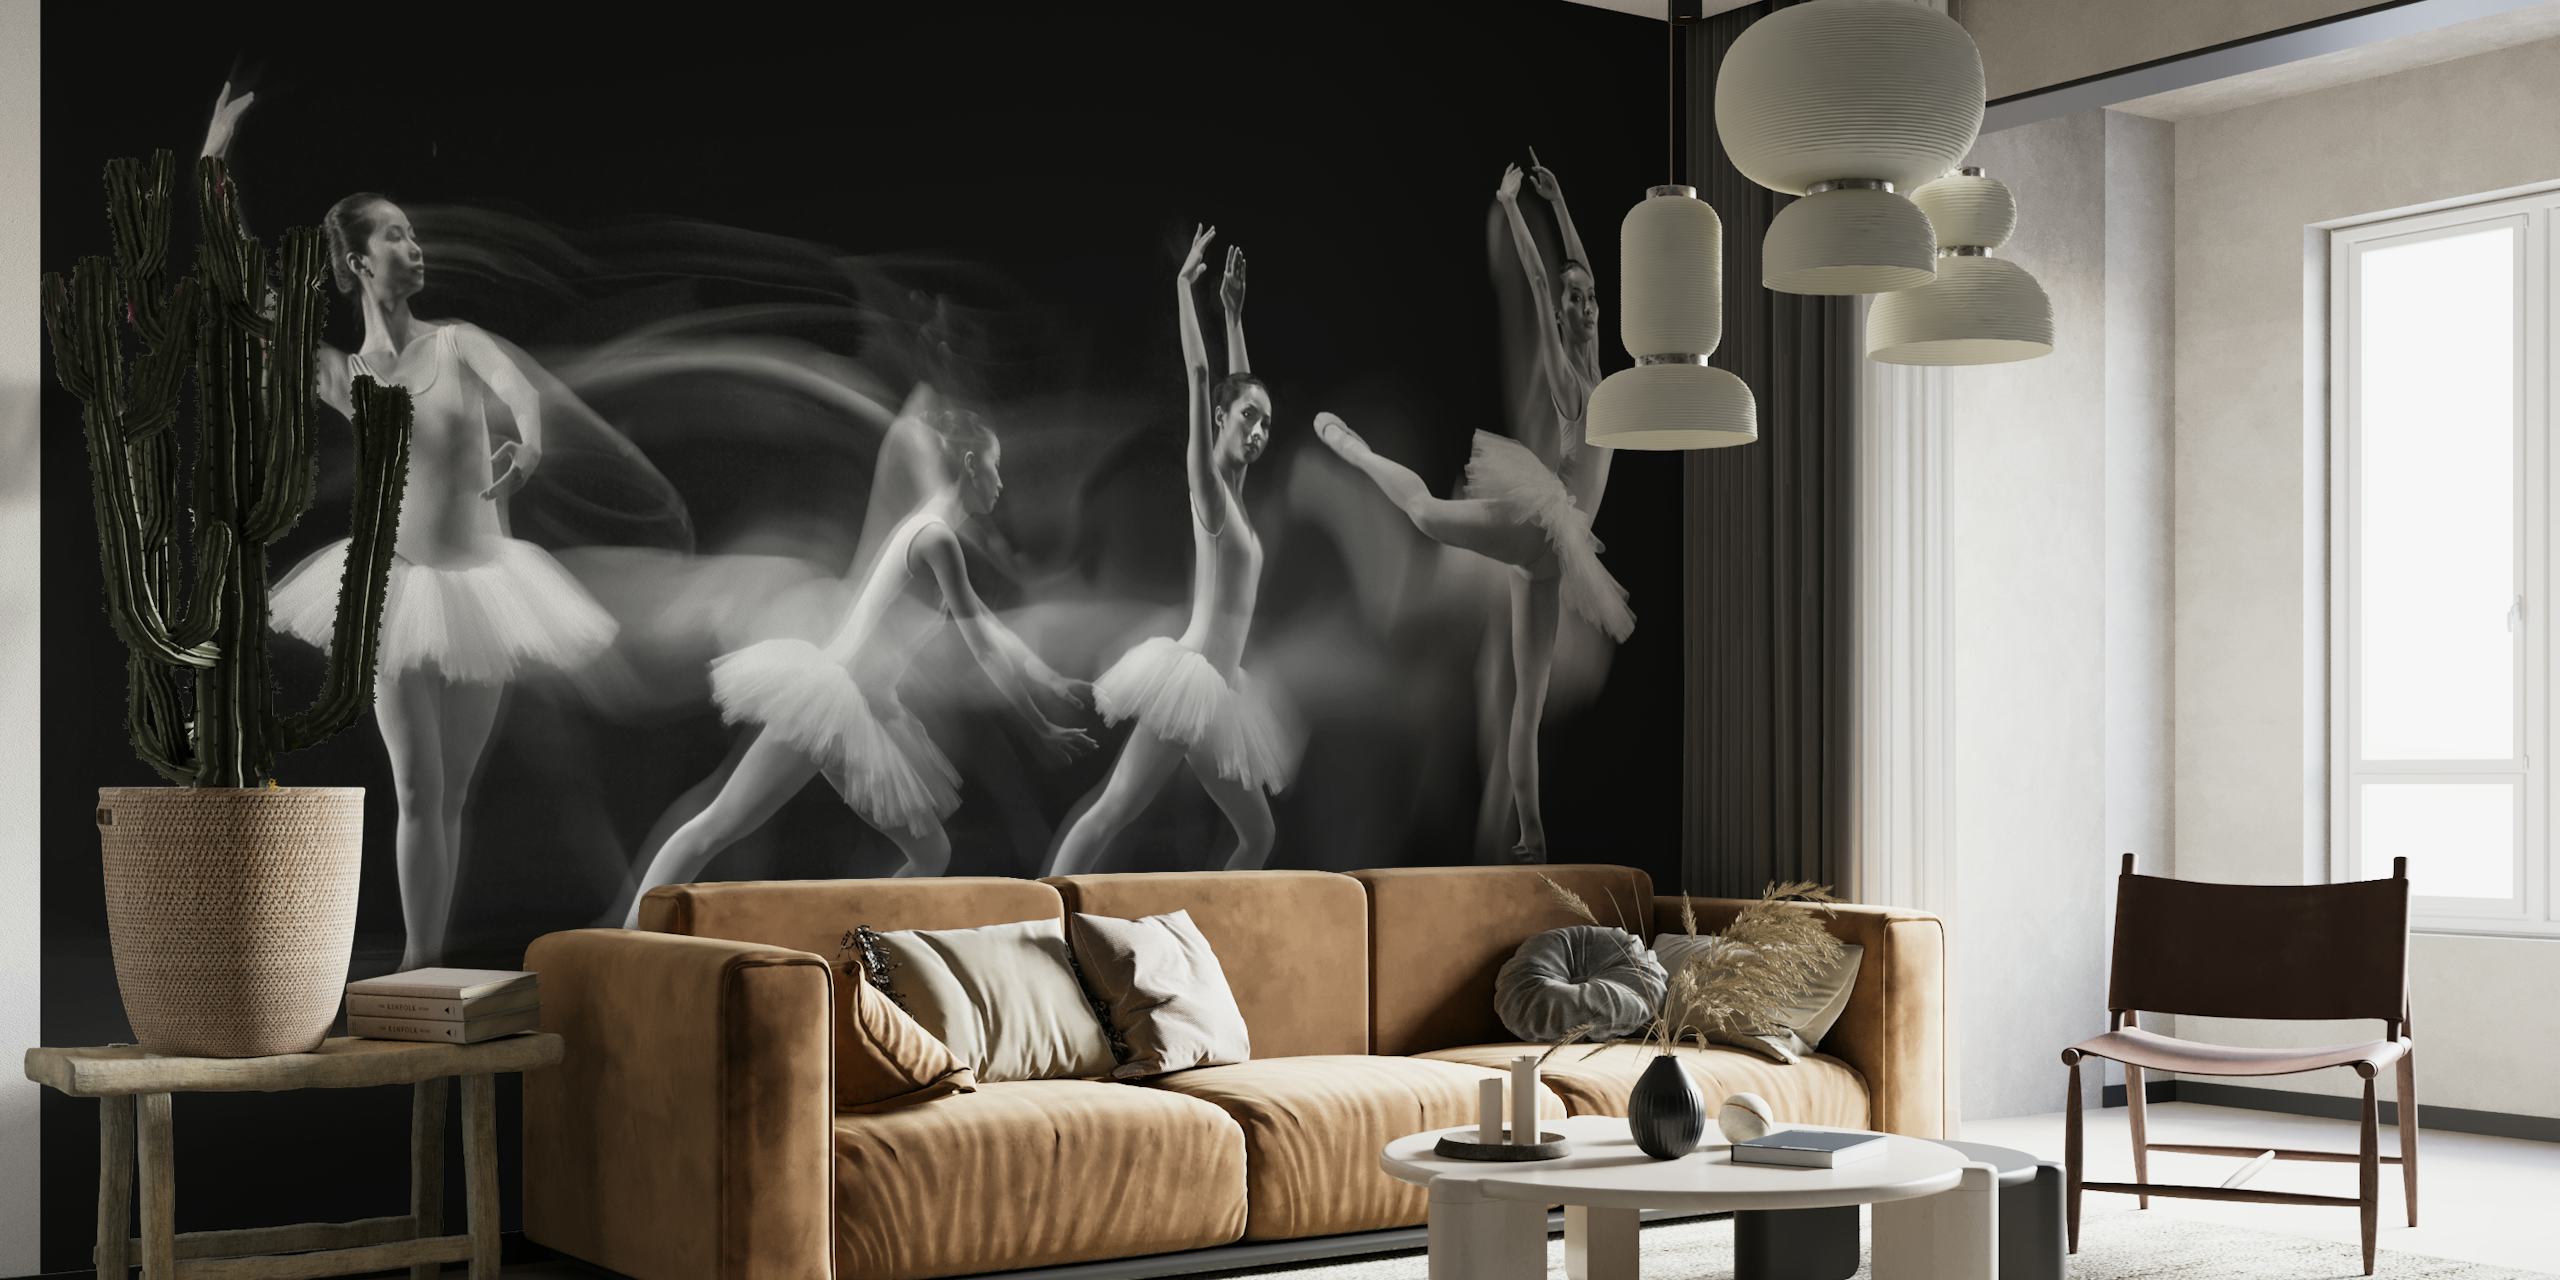 Sort-hvide balletdansere vægmaleri, der danner en kunstnerisk bølge